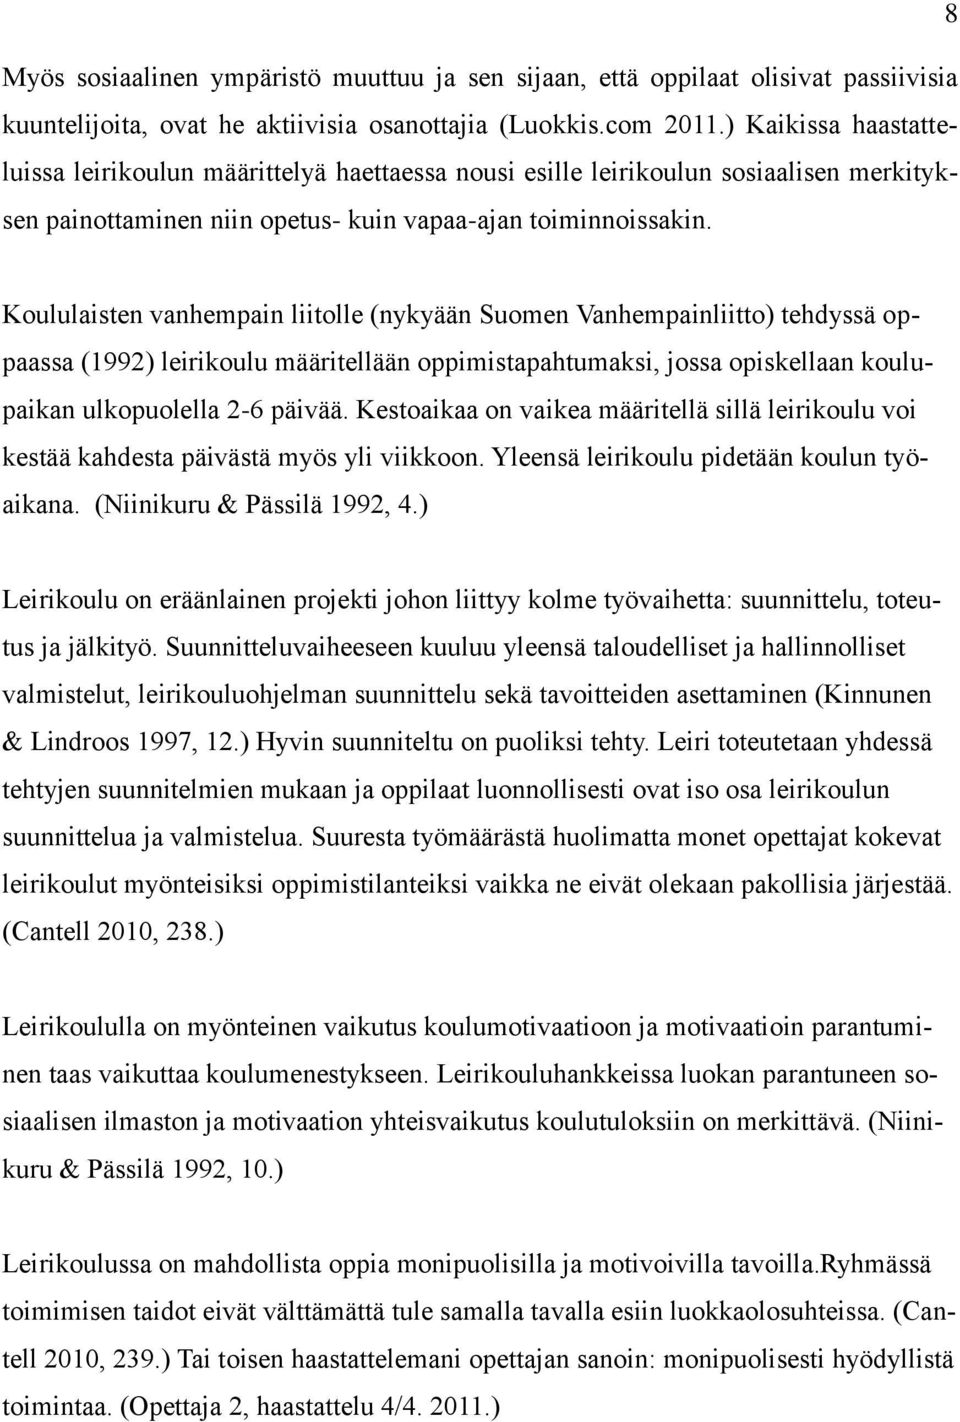 Koululaisten vanhempain liitolle (nykyään Suomen Vanhempainliitto) tehdyssä oppaassa (1992) leirikoulu määritellään oppimistapahtumaksi, jossa opiskellaan koulupaikan ulkopuolella 2-6 päivää.